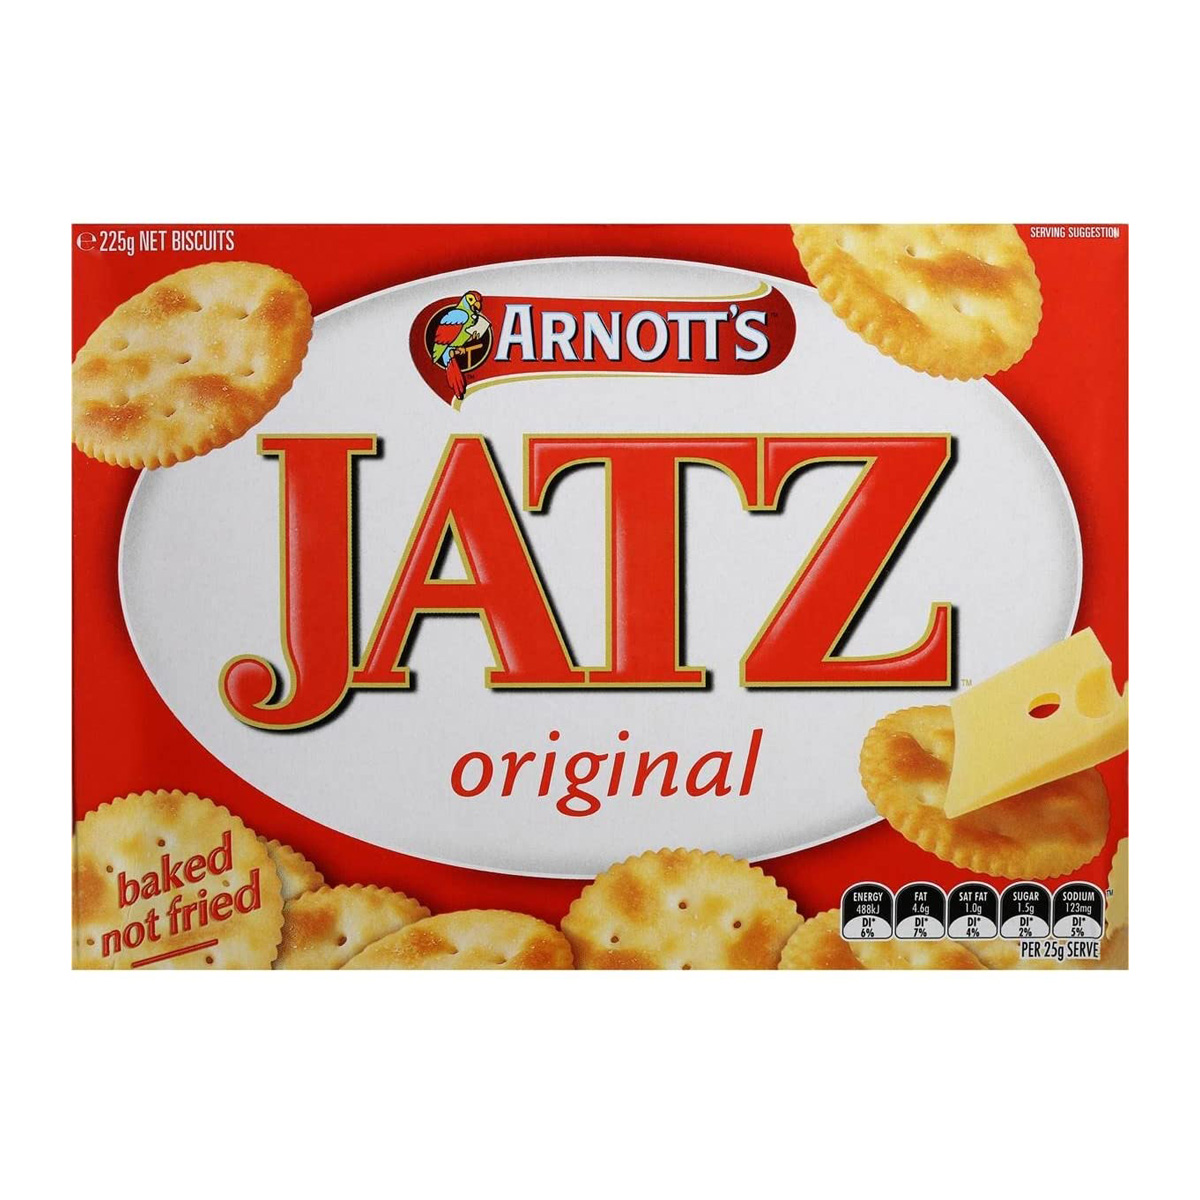 Arnott’s Jatz